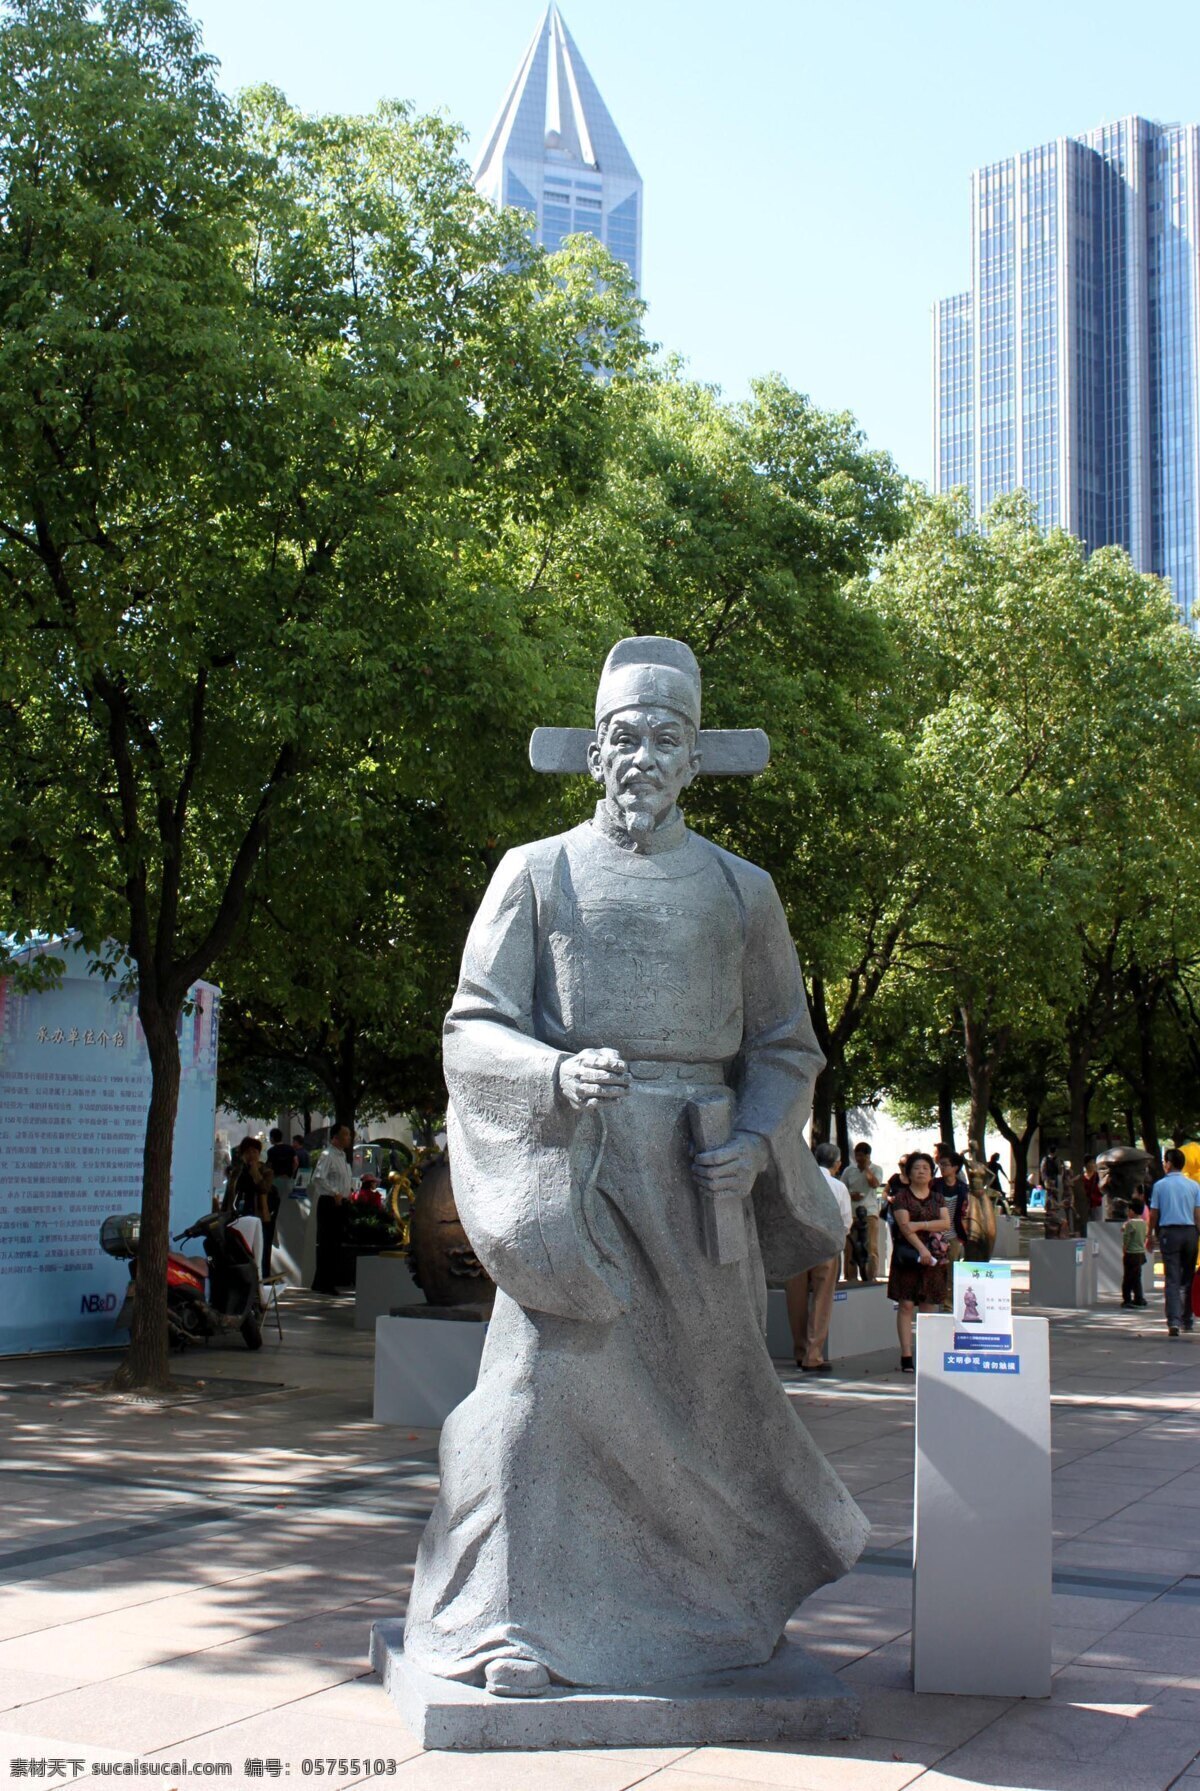 海瑞 雕塑 海南 上海 南京路 艺术 园林 公园 公众艺术 旅游风景 上海南京路 邀请展 2013 年 建筑园林